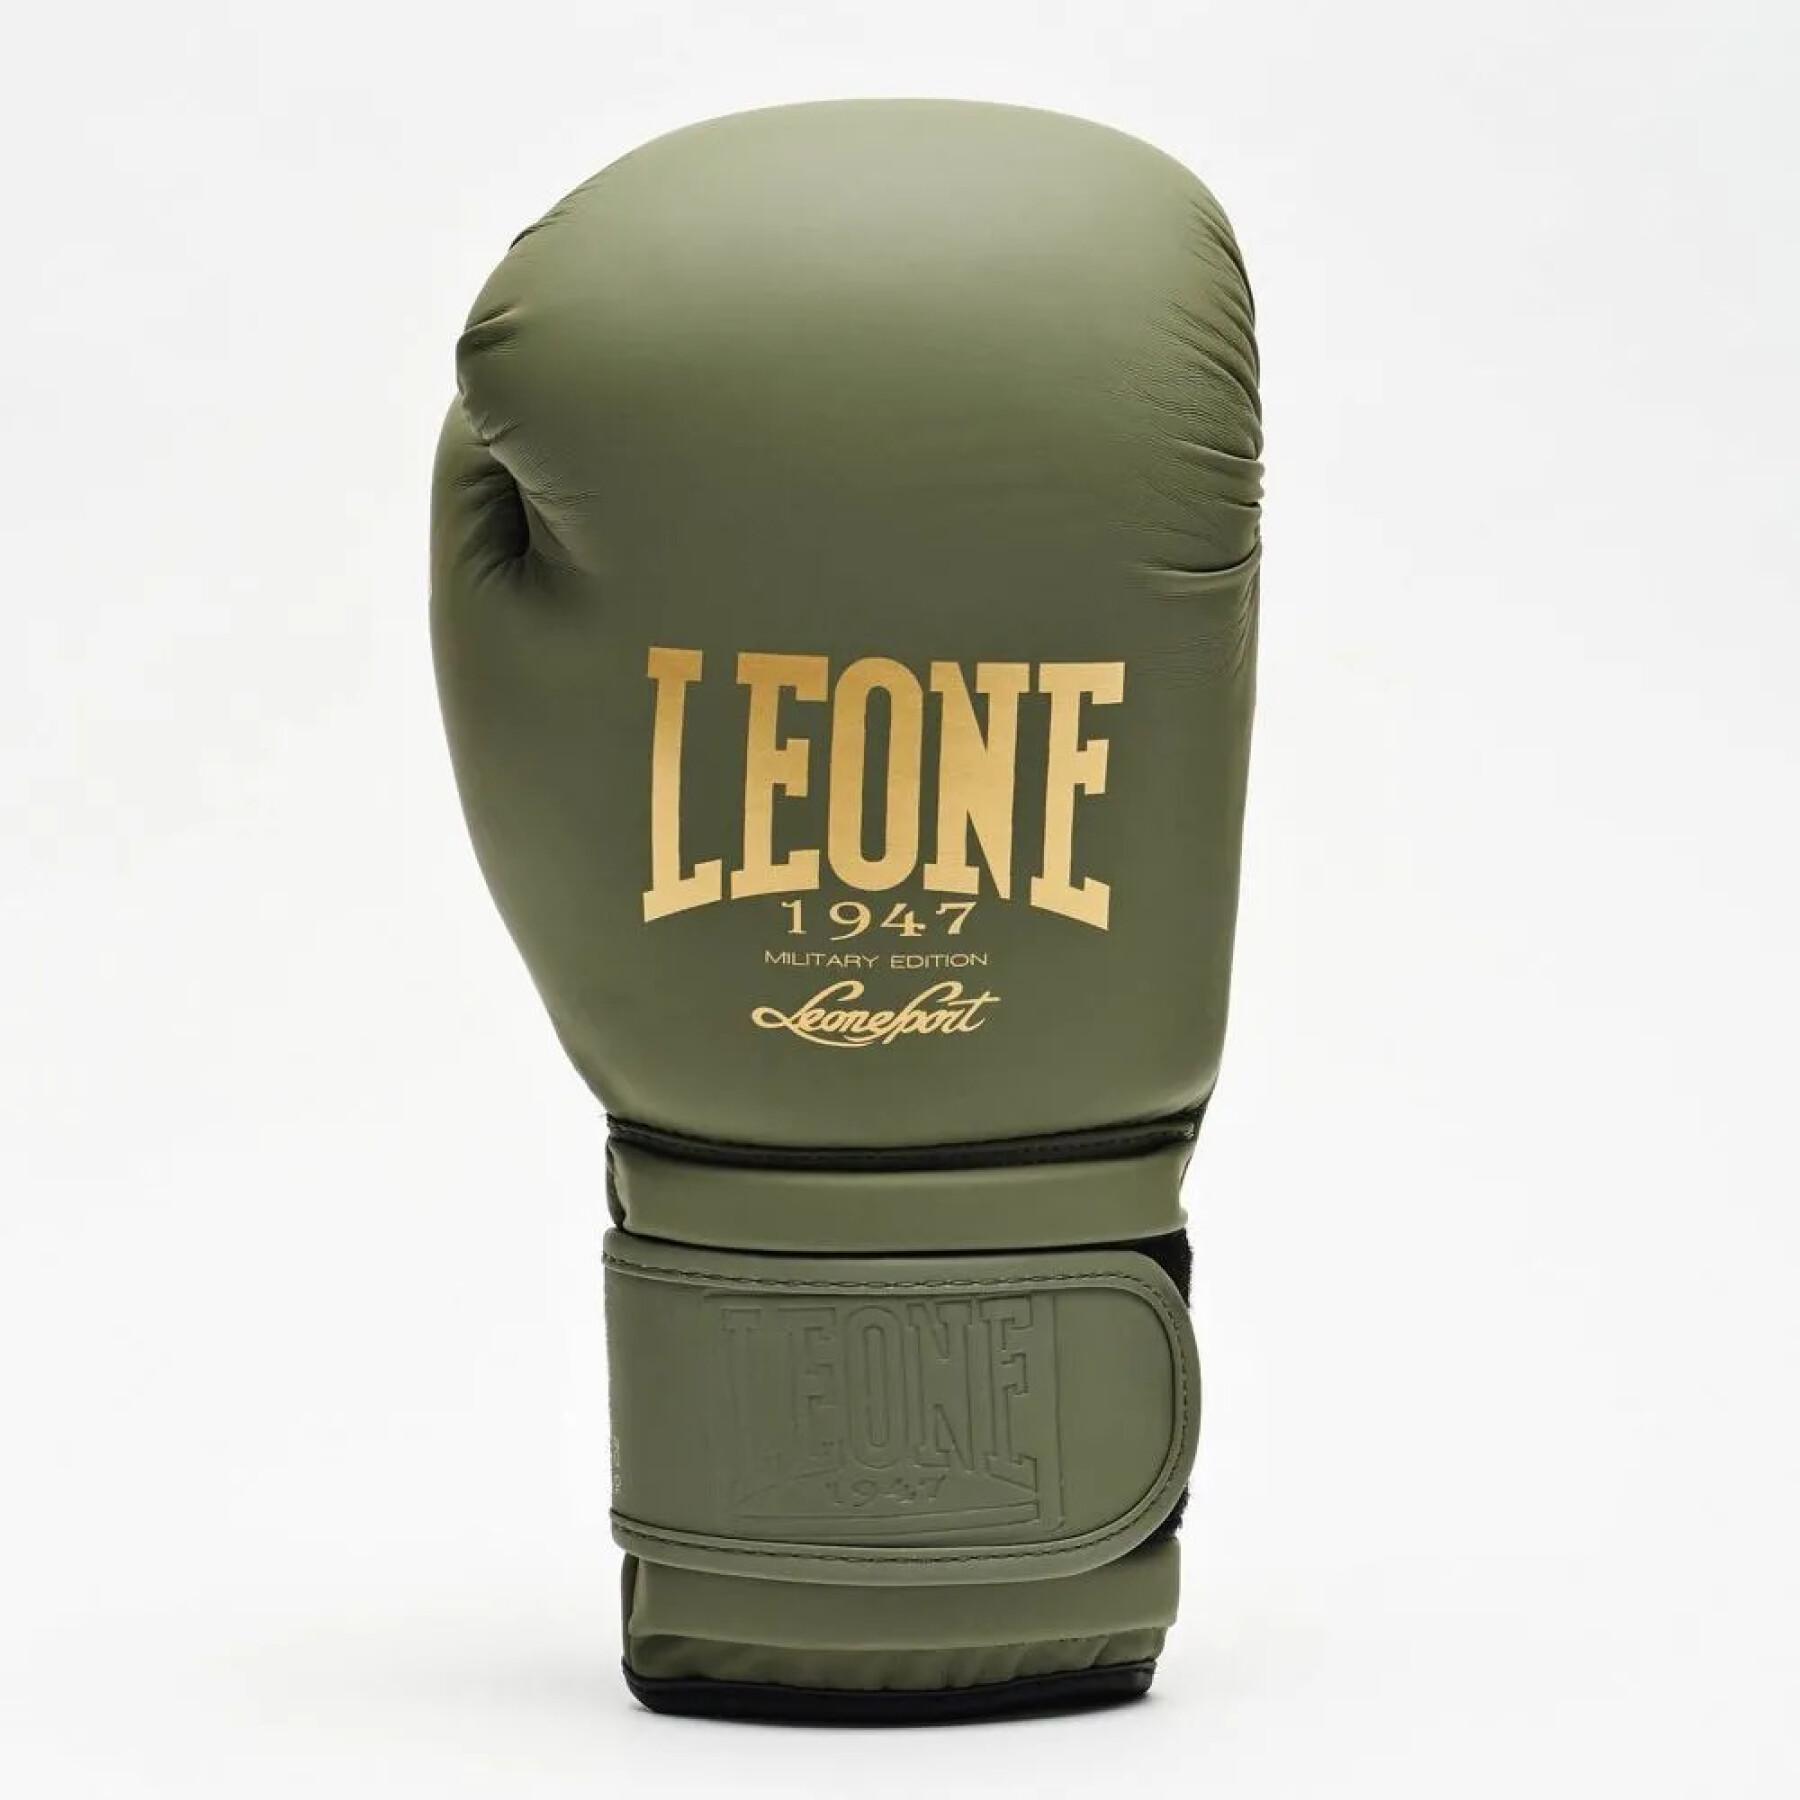 Militärische Boxhandschuhe Leone 14 oz